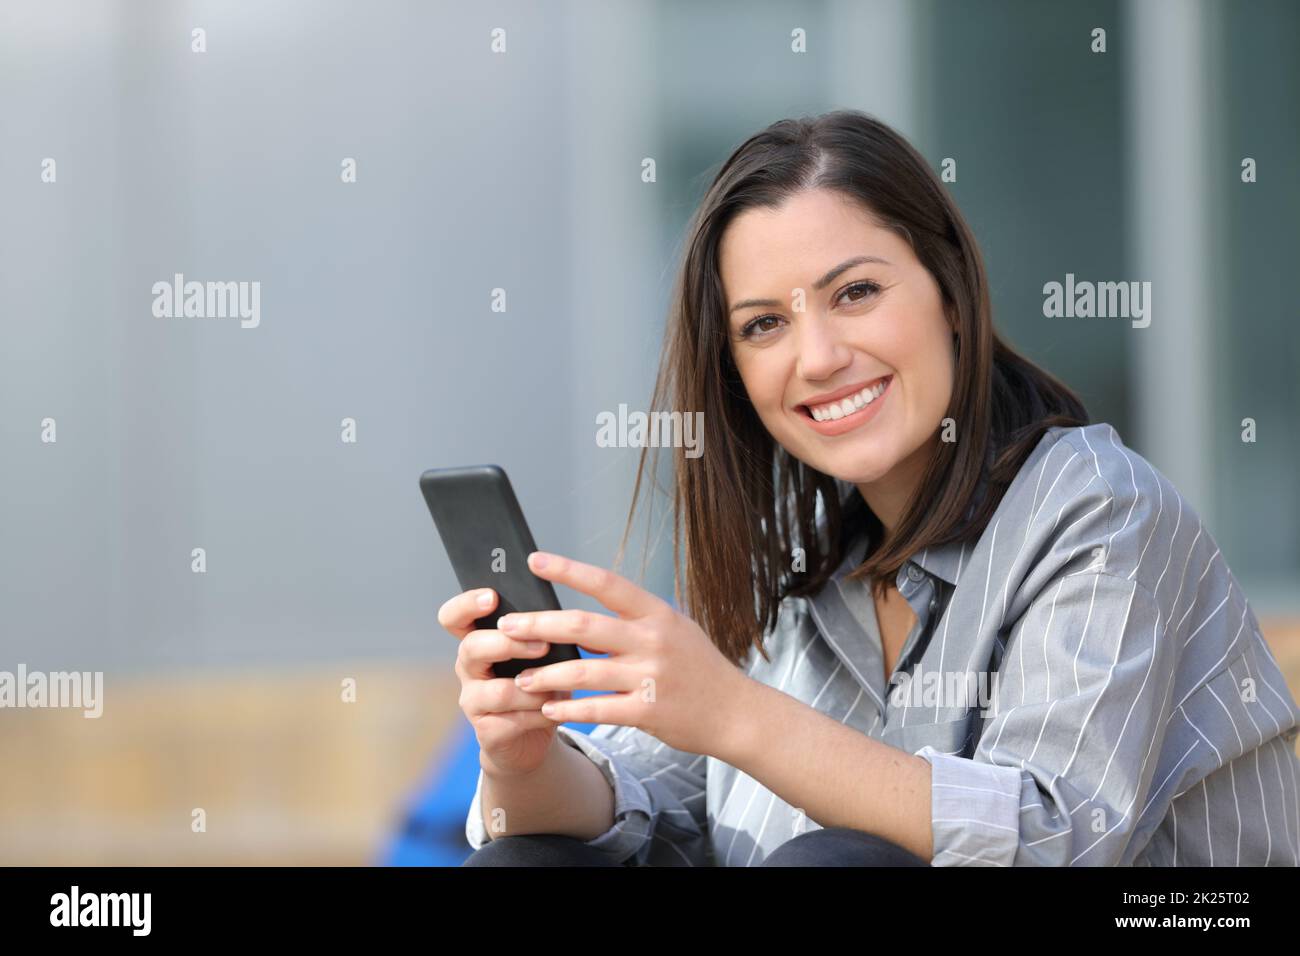 Un étudiant heureux tenant le téléphone vous regarde Banque D'Images